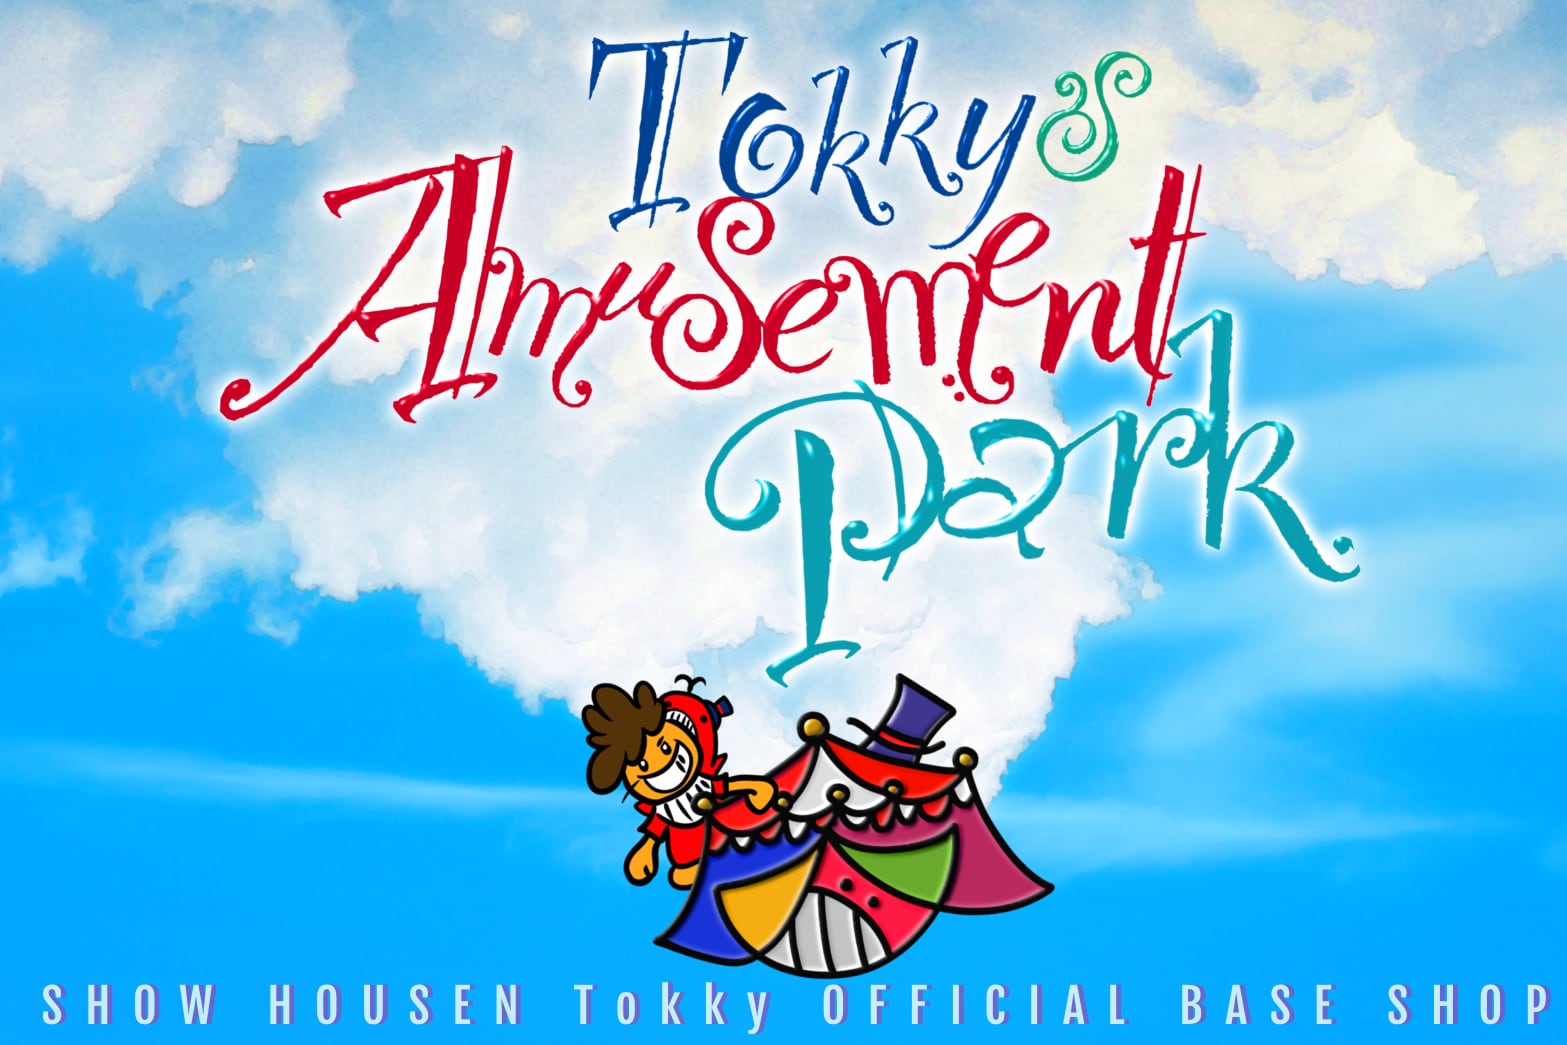 Tokky’s Amusement Park